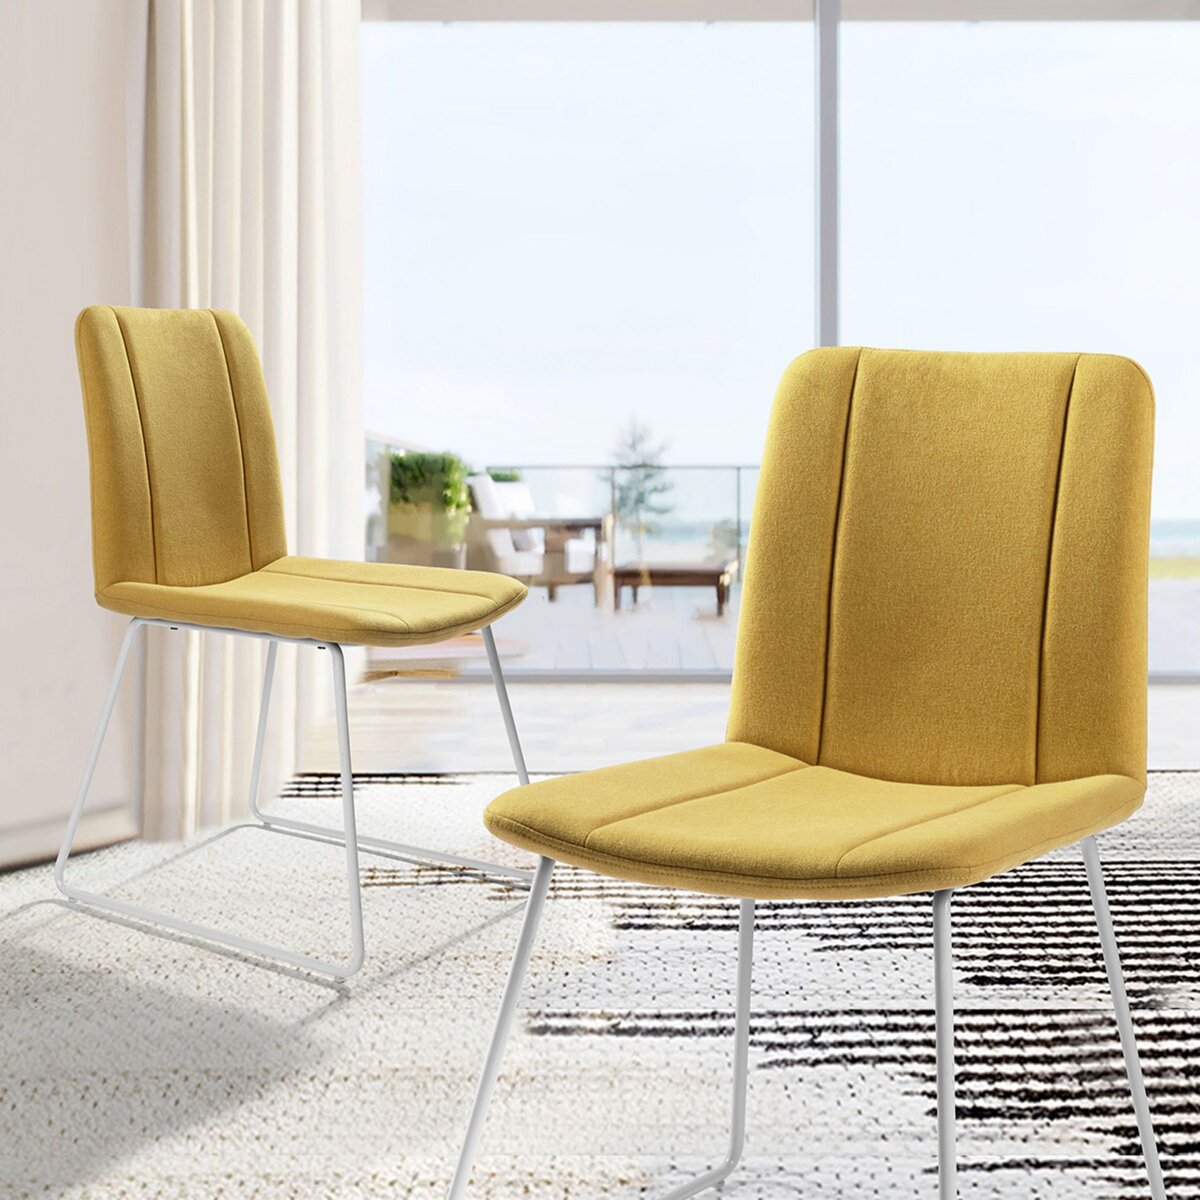  Lot de 2 chaises de salle à manger jaunes, style scandinave, revêtement en tissu, 45,5 x 54,5 x 82,5 cm